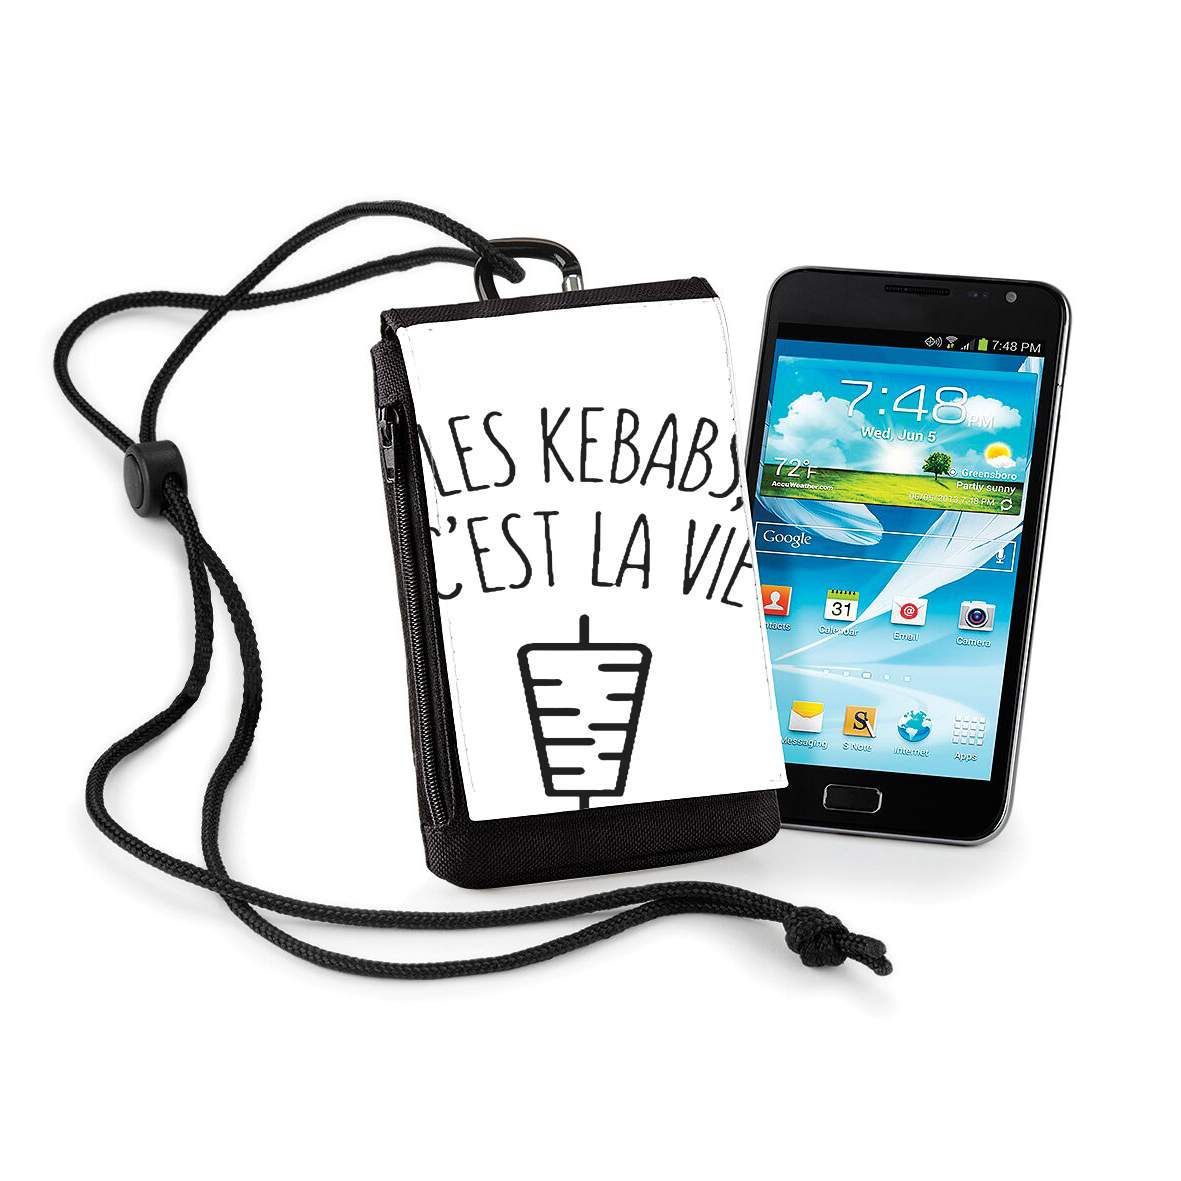 Pochette de téléphone - Taille XL pour Les Kebabs cest la vie